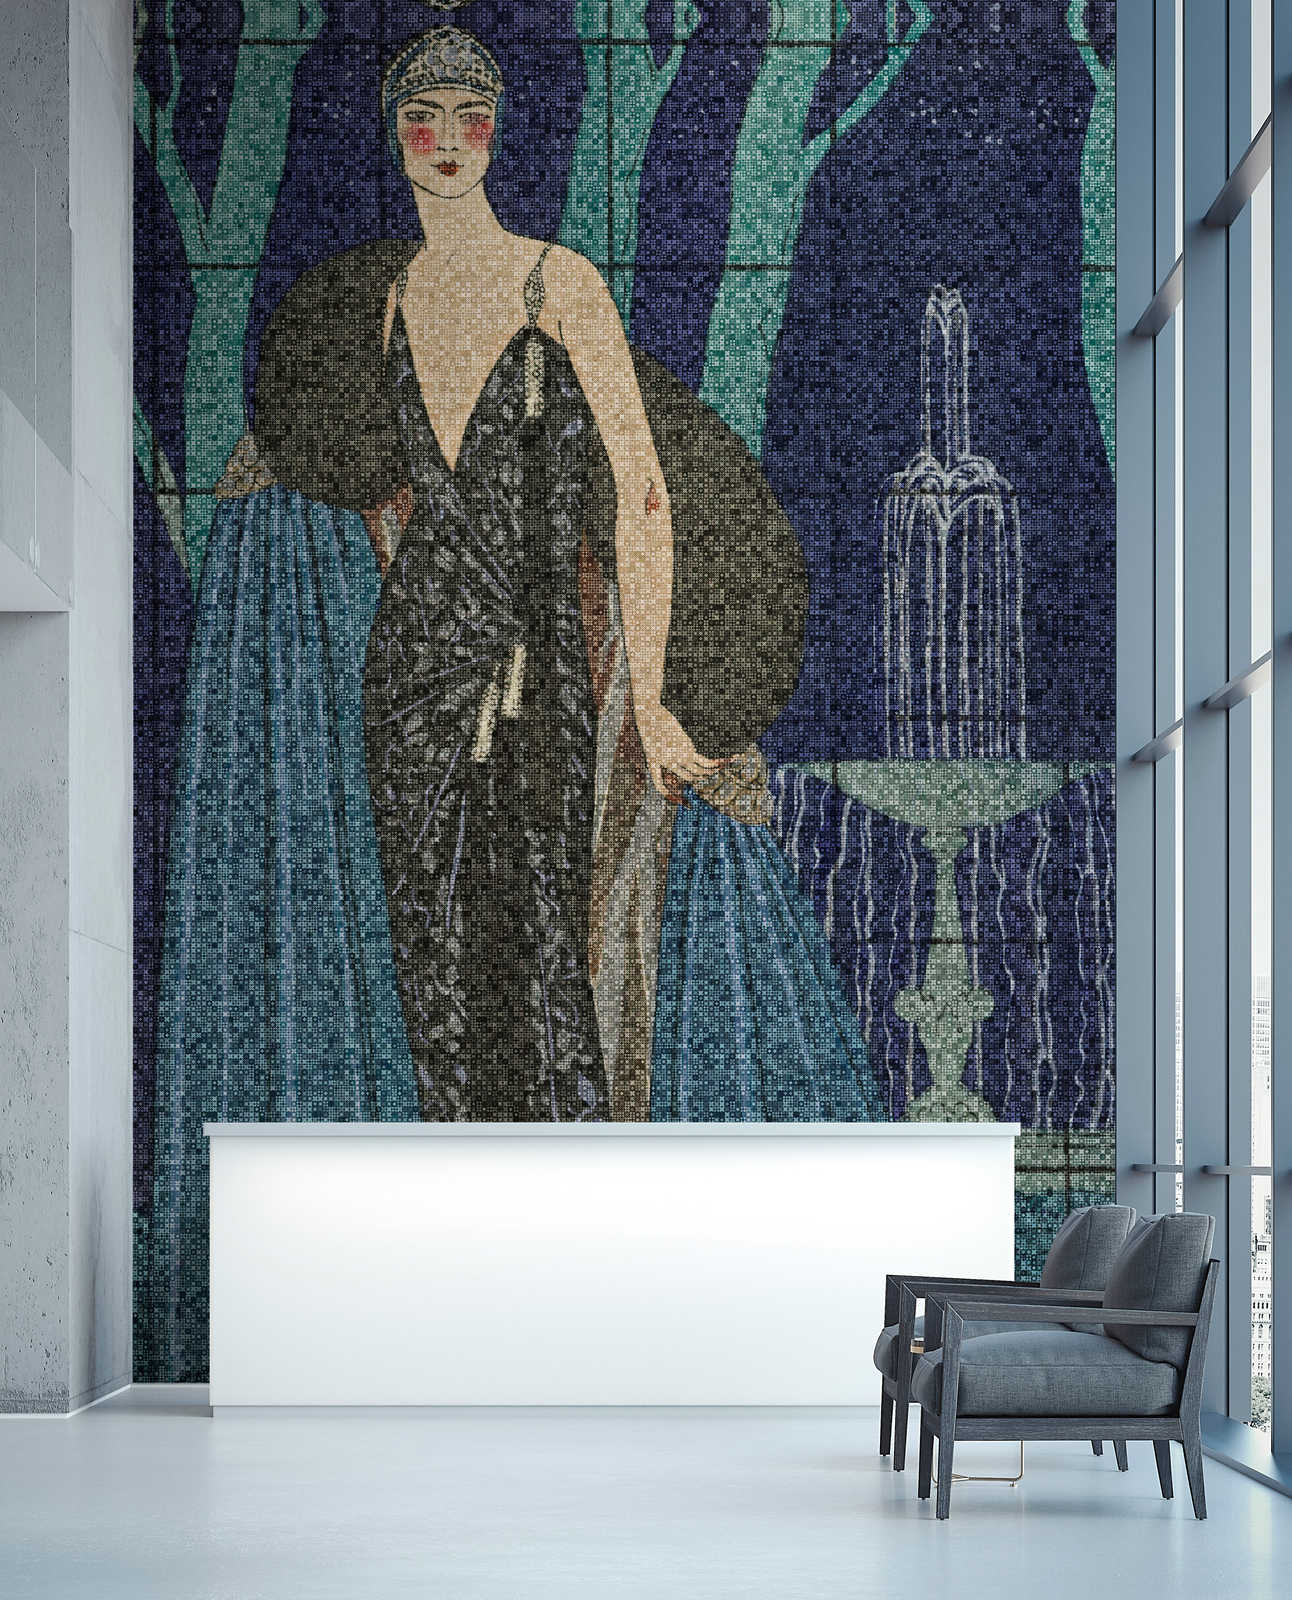             Scala 3 – Art Deko Fototapete elegantes Frauen Motiv
        